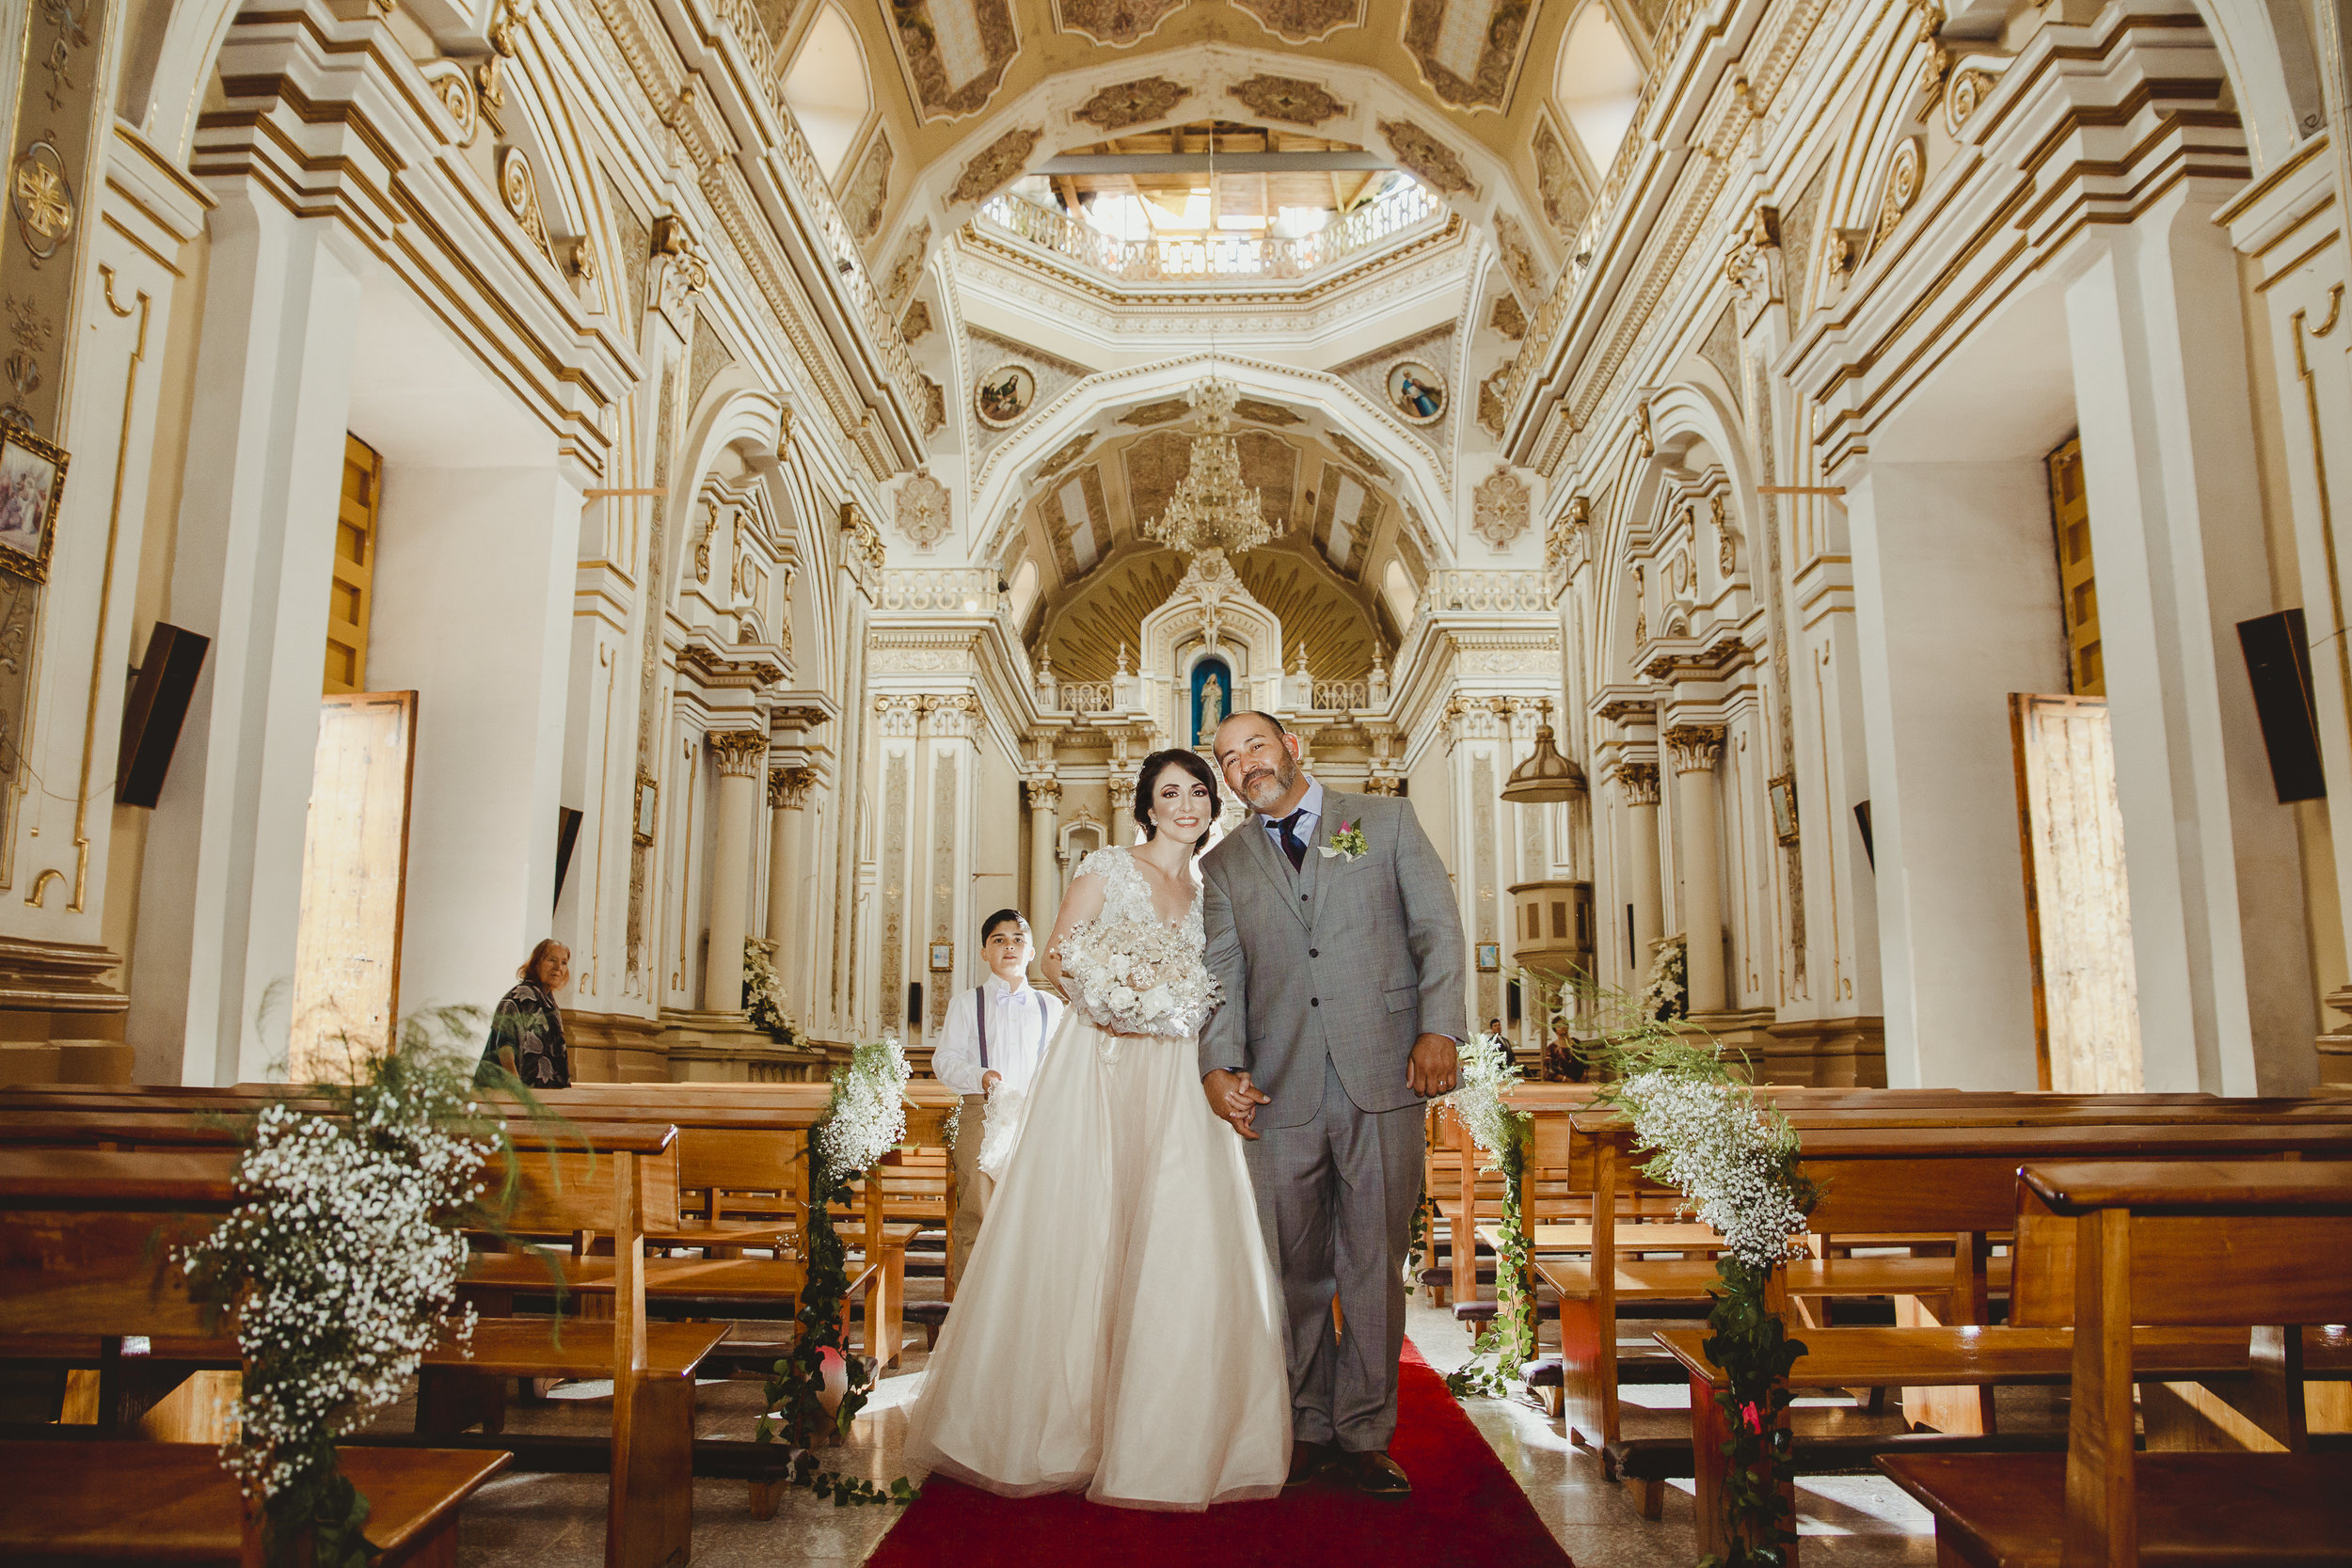 Fotografo-de-bodas-destino-Mexico-wedding-destination-photographer-san-miguel-de-allende-guanajuato-queretaro-boho-bohemian-bohemio-chic-editorial-carotida-photographer-lago-michoacan-sierra